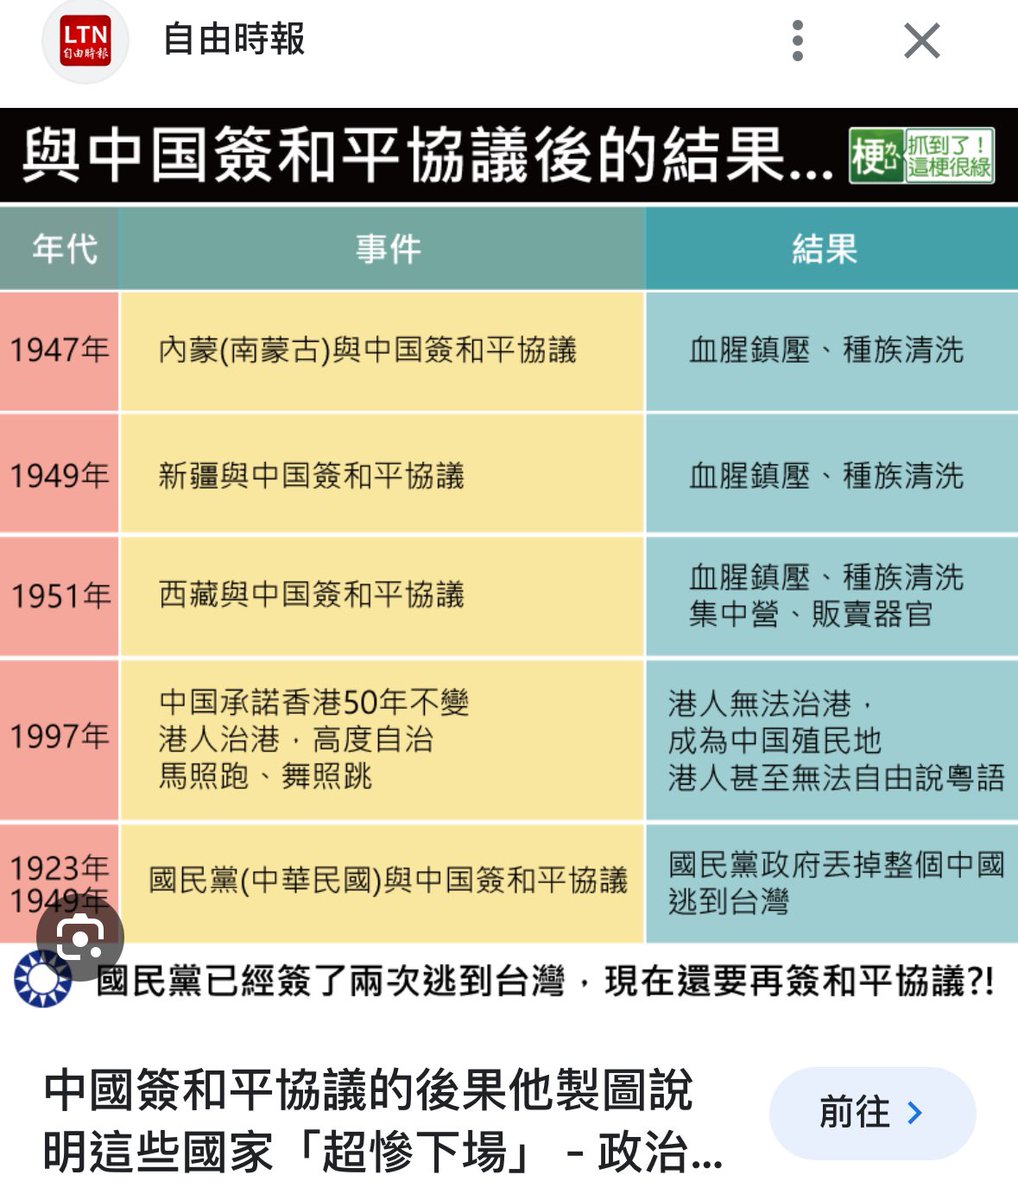 台灣人扭曲別國歷史都快變成一種習慣了。像下面這張圖最近幾年經常能在台推看到吧，明明是錯誤百出的東西，但就是能被台灣人到處瘋傳。香港人抗爭史被歪曲了尚且還能在推特罵幾句，這些民族卻是已經再也不能說話了，所以歷史就任由人打扮。你要是細細跟台灣人指出哪兒錯了他們就說沒義務了解他國歷史🤷‍♀️